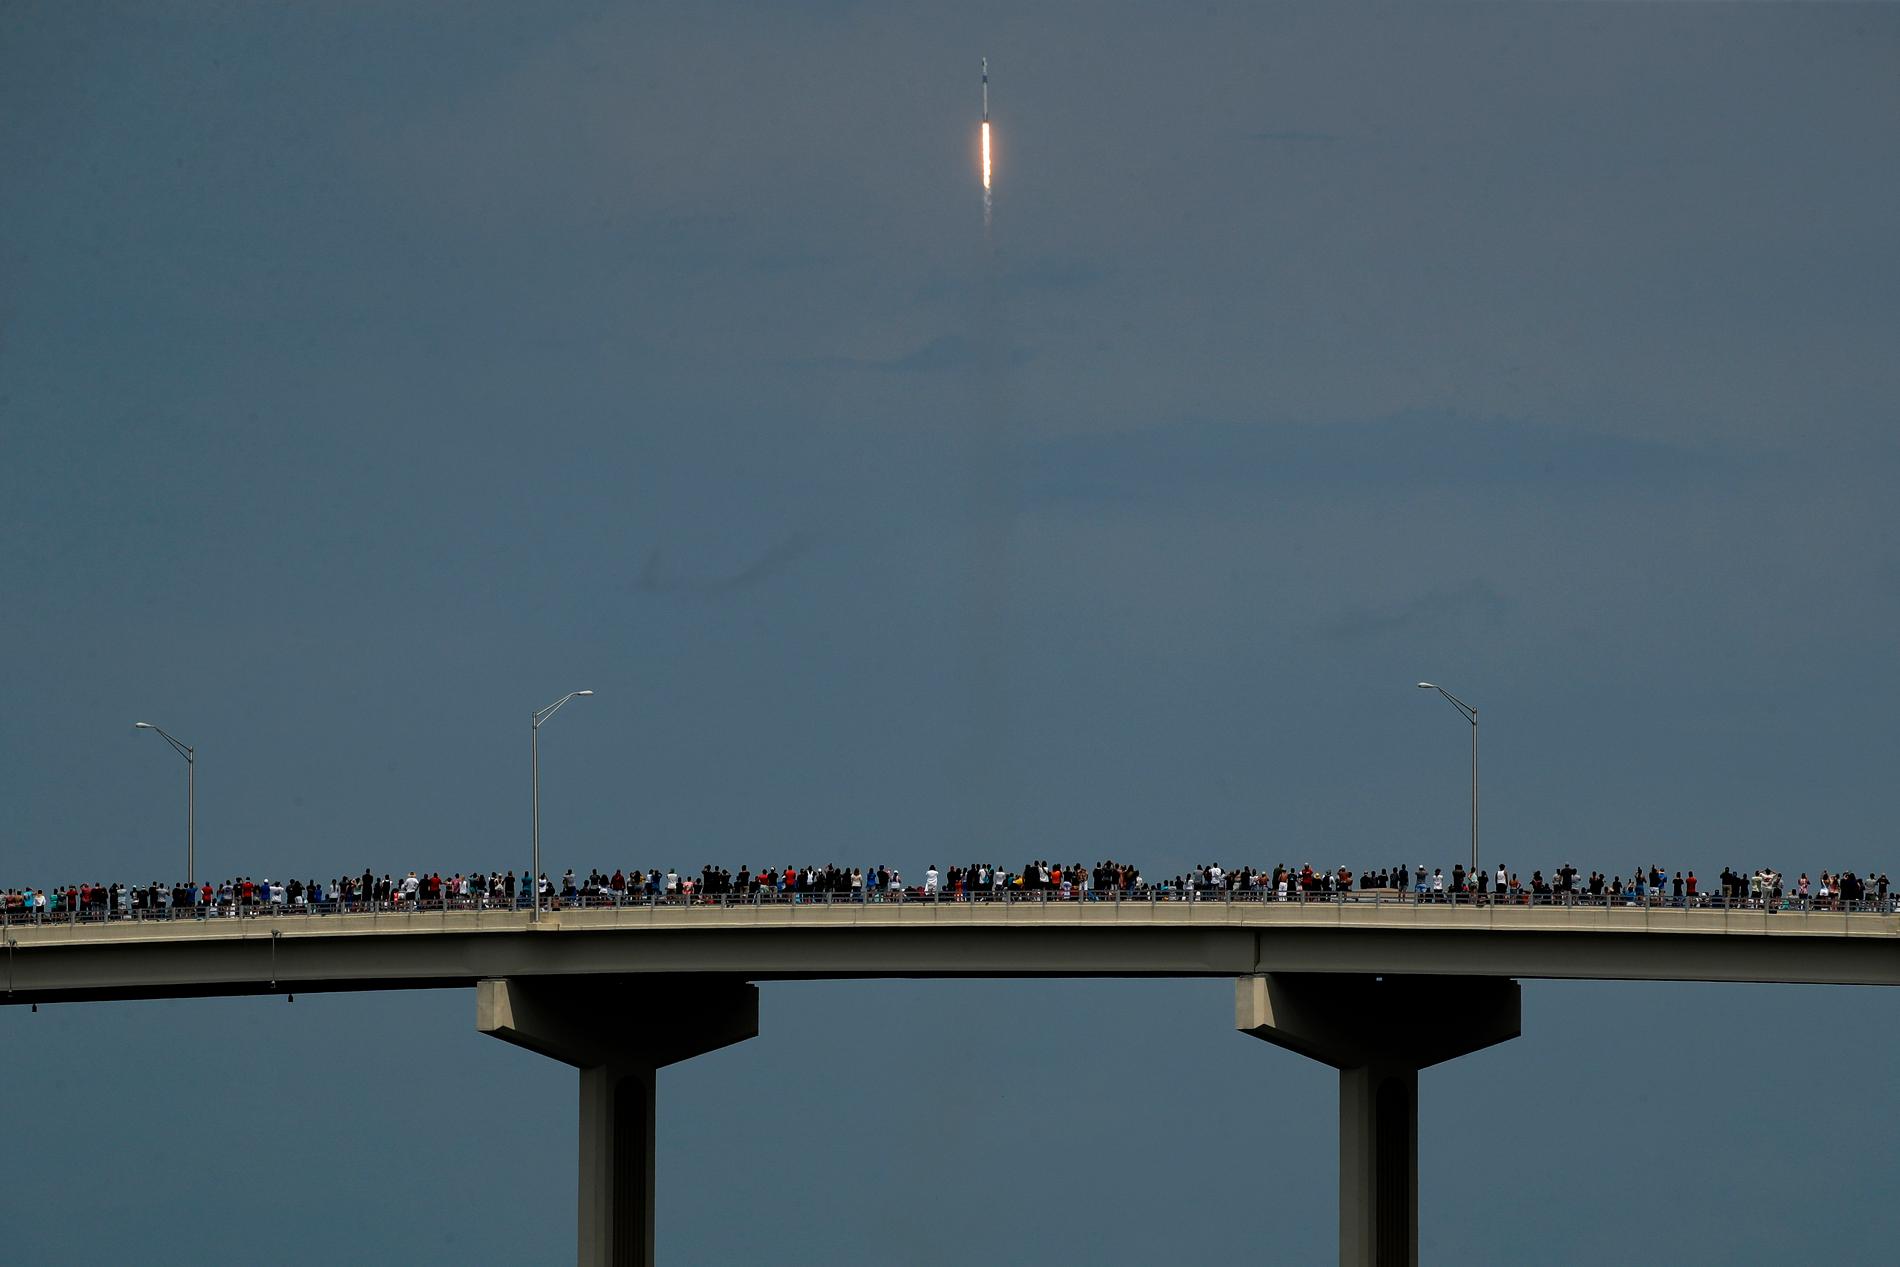 Raketuppskjutningar är ett folknöje i Florida, även i covidtider. Här beundrar samlade åskådare den stigande Falcon 9-raketen från en bro i Titusville.